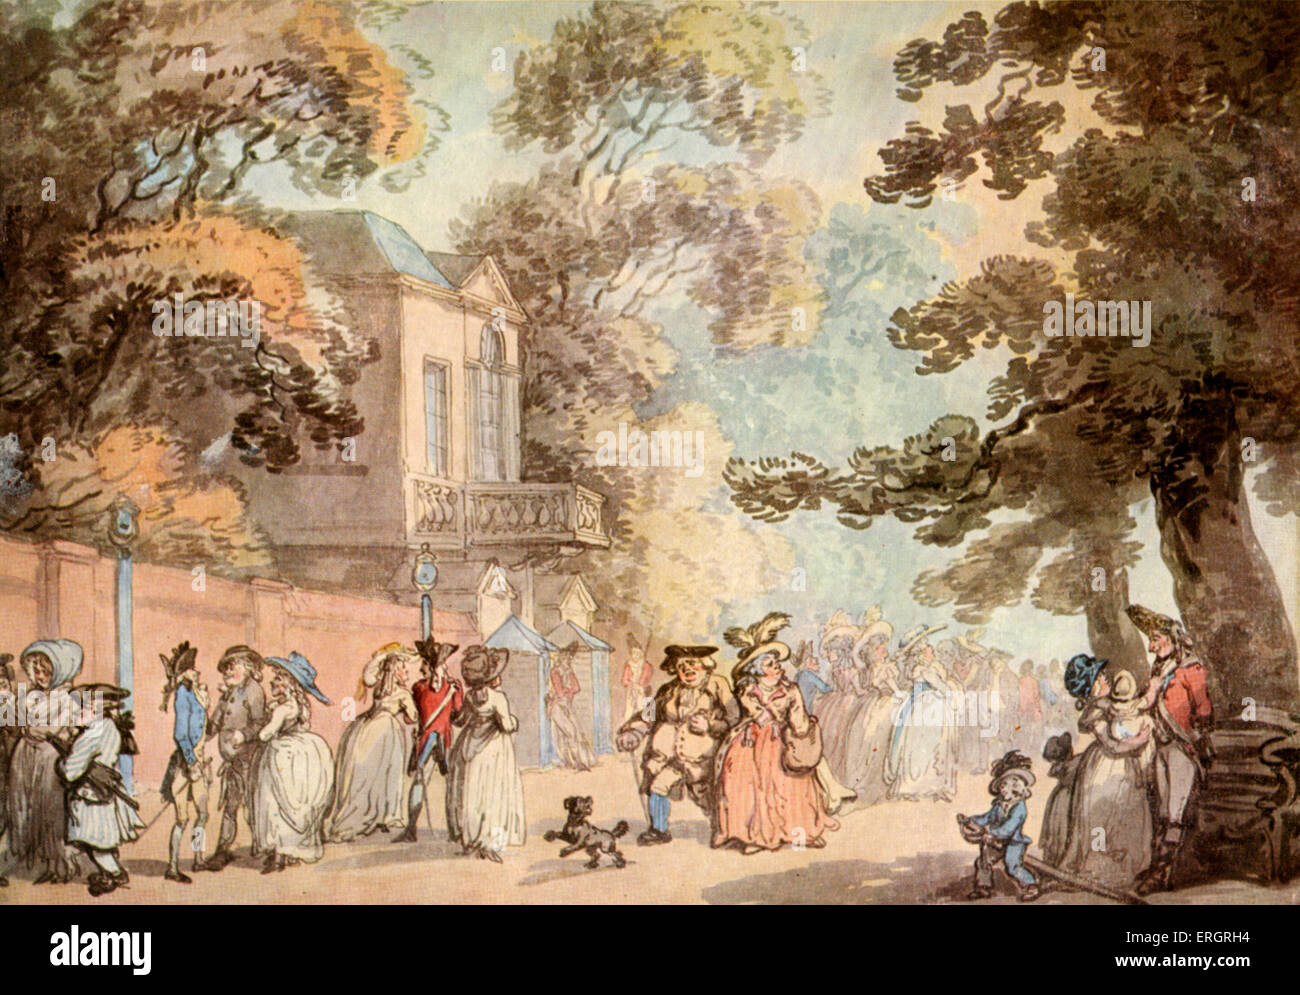 Spring Gardens (l'entrée du Mall), aquarelle de Thomas Rowlandson, 1756-1827. La société. 18e siècle contemporain Banque D'Images